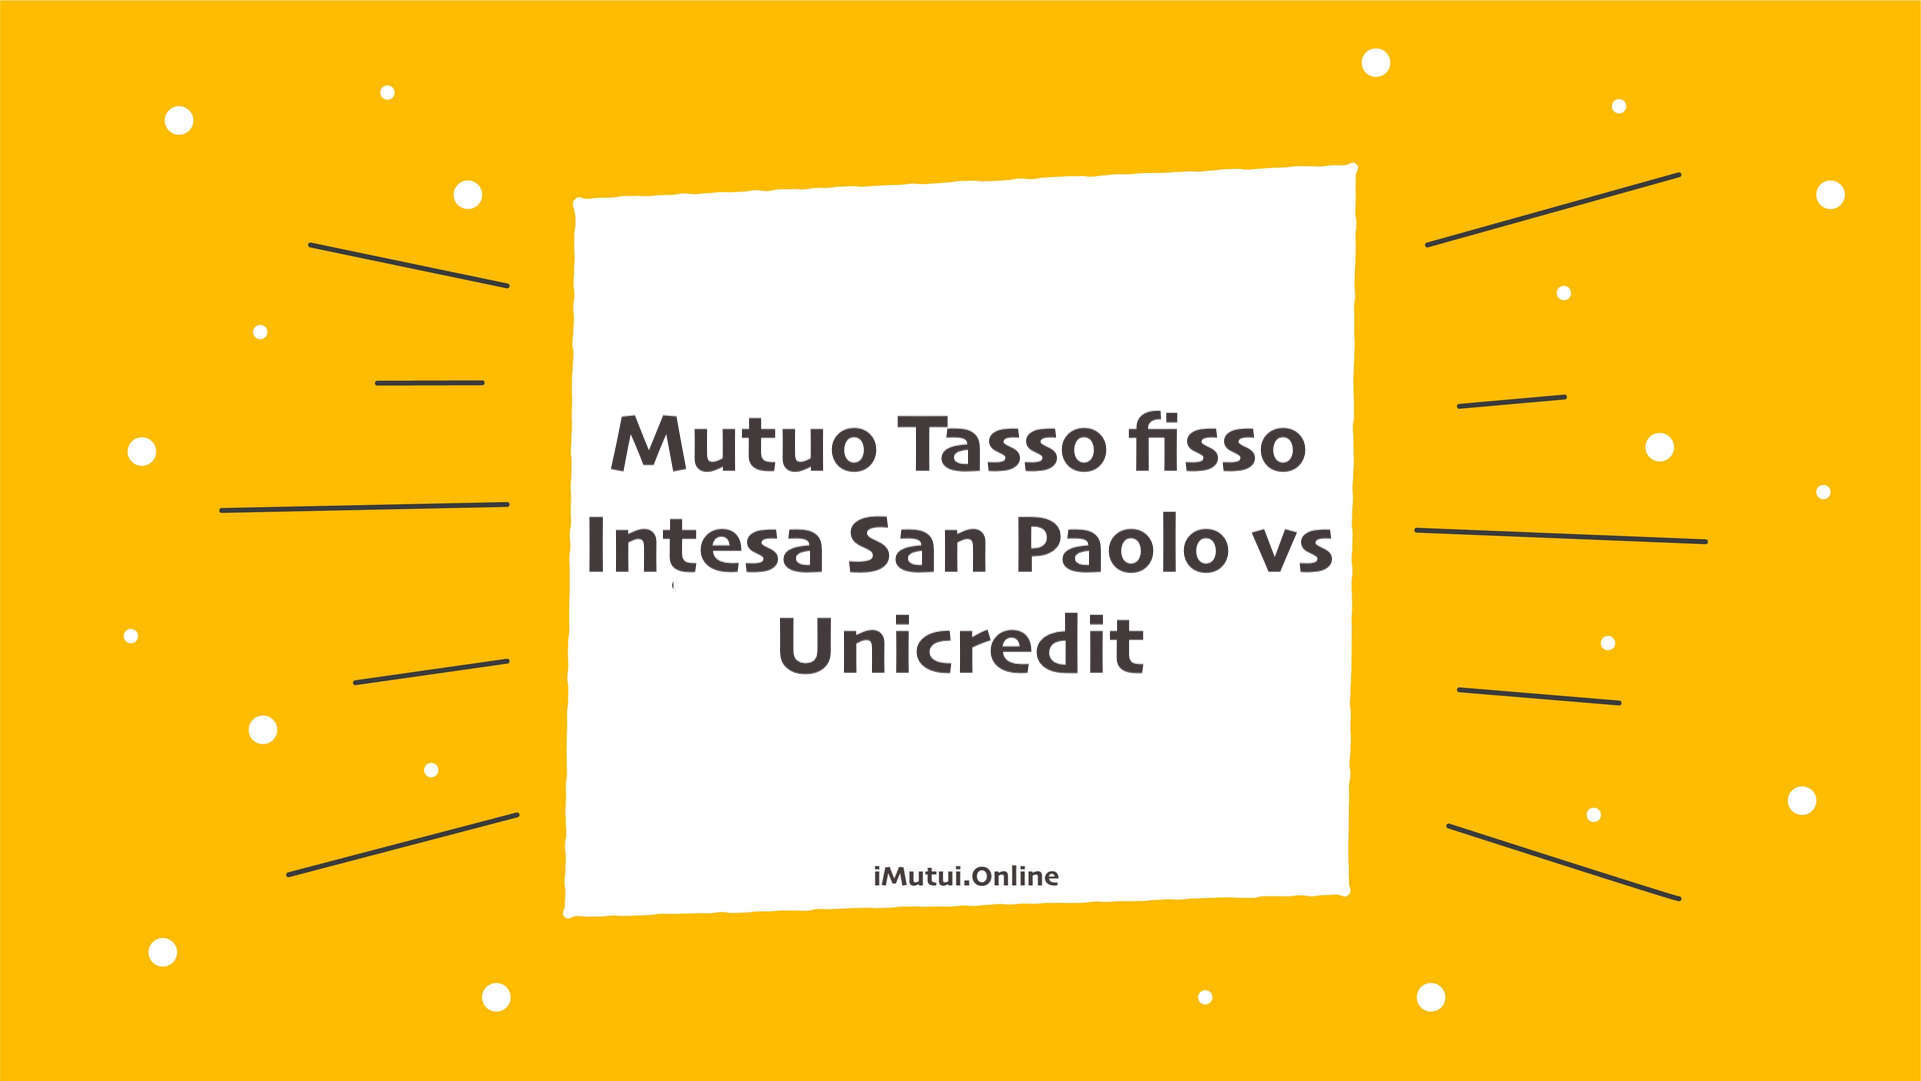 Mutuo Tasso fisso Intesa San Paolo vs Unicredit